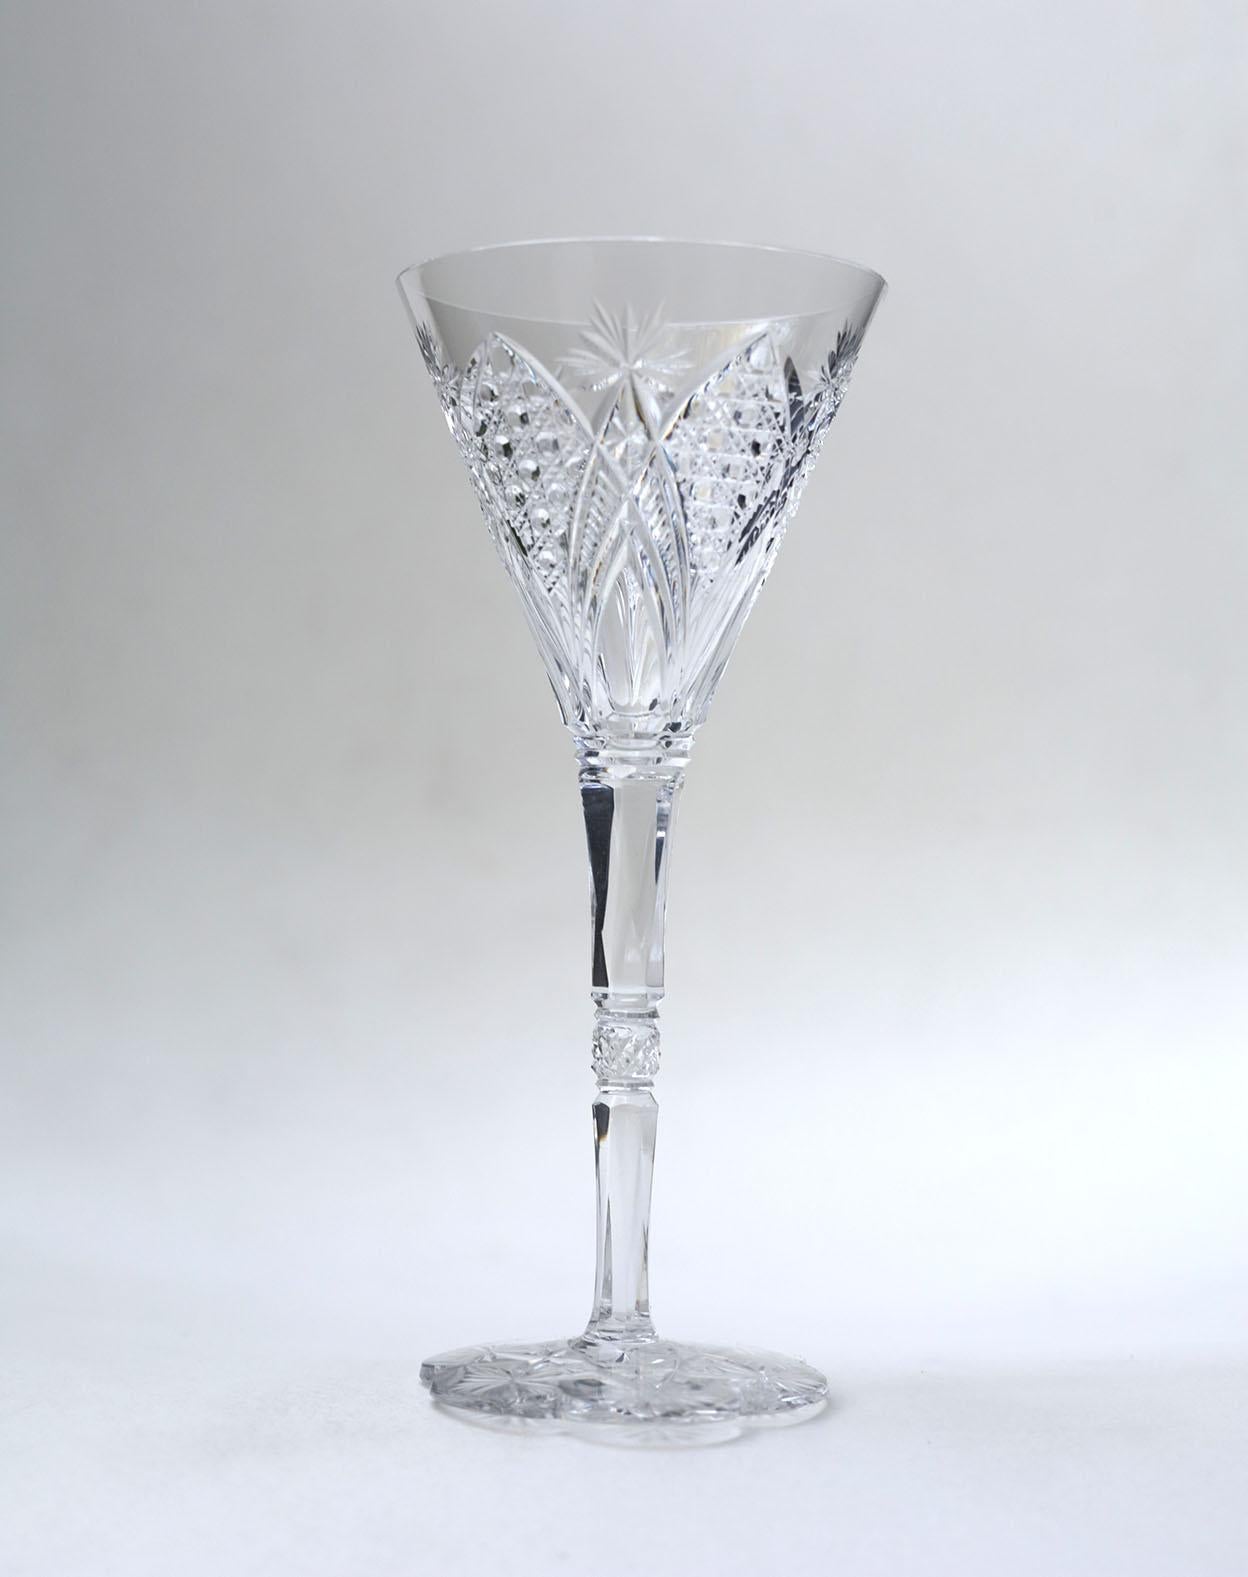 Das Service Baccarat Elbeuf wurde erstmals 1908 vorgestellt und 1909 auf der Internationalen Ausstellung in Nancy, Frankreich, präsentiert. Speziell bestellt 1920 vom Maharaja von Baroda.
Dieses Set aus 6 signierten Baccarat-Gläsern besteht aus